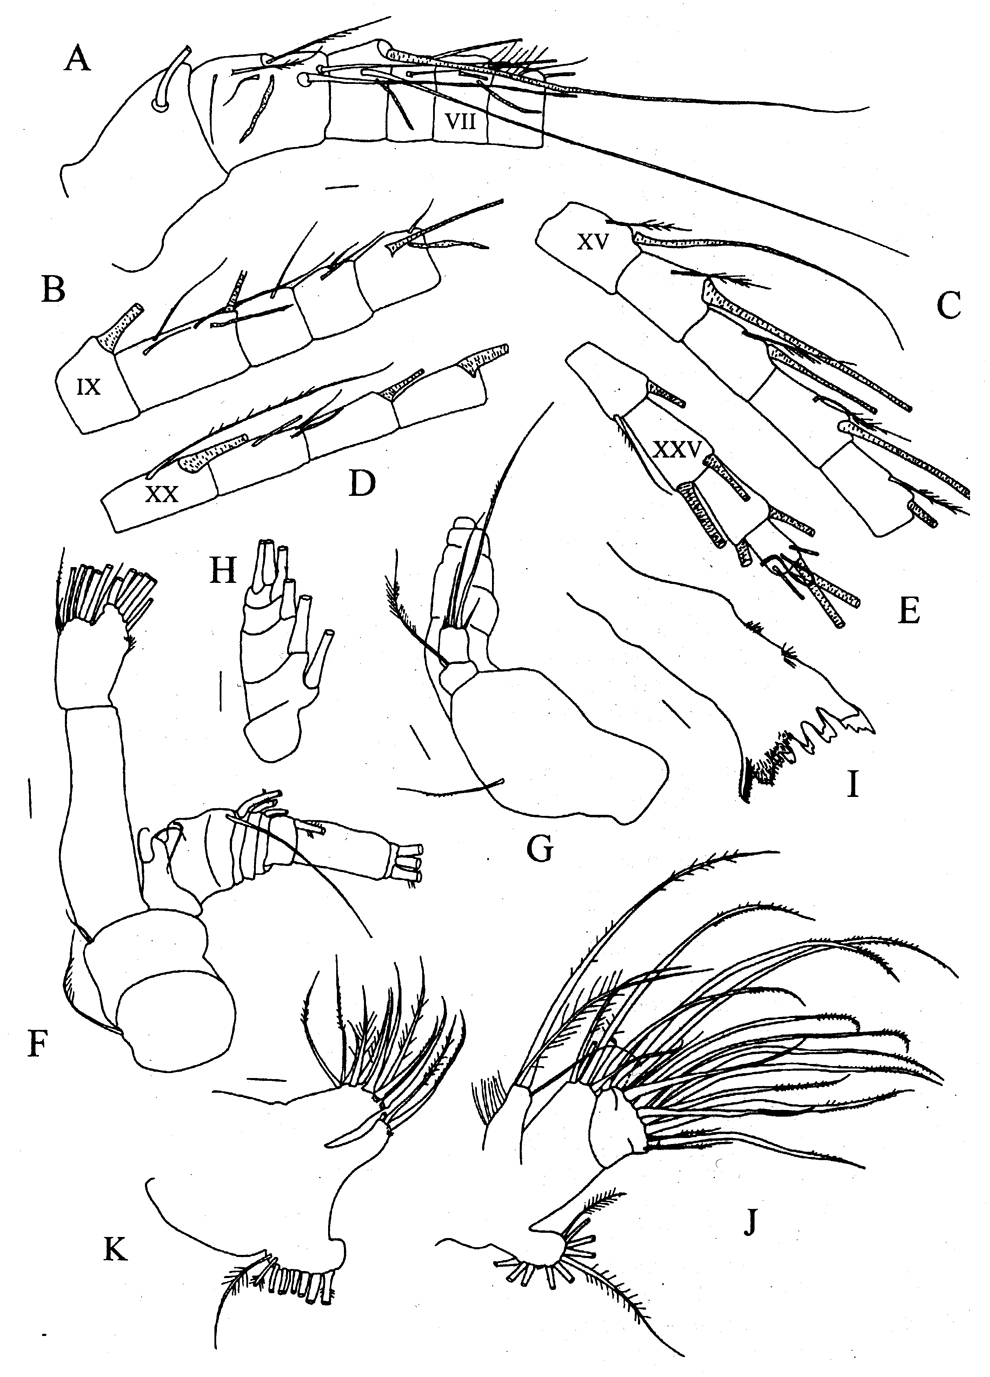 Espèce Pseudeuchaeta acuticornis - Planche 2 de figures morphologiques